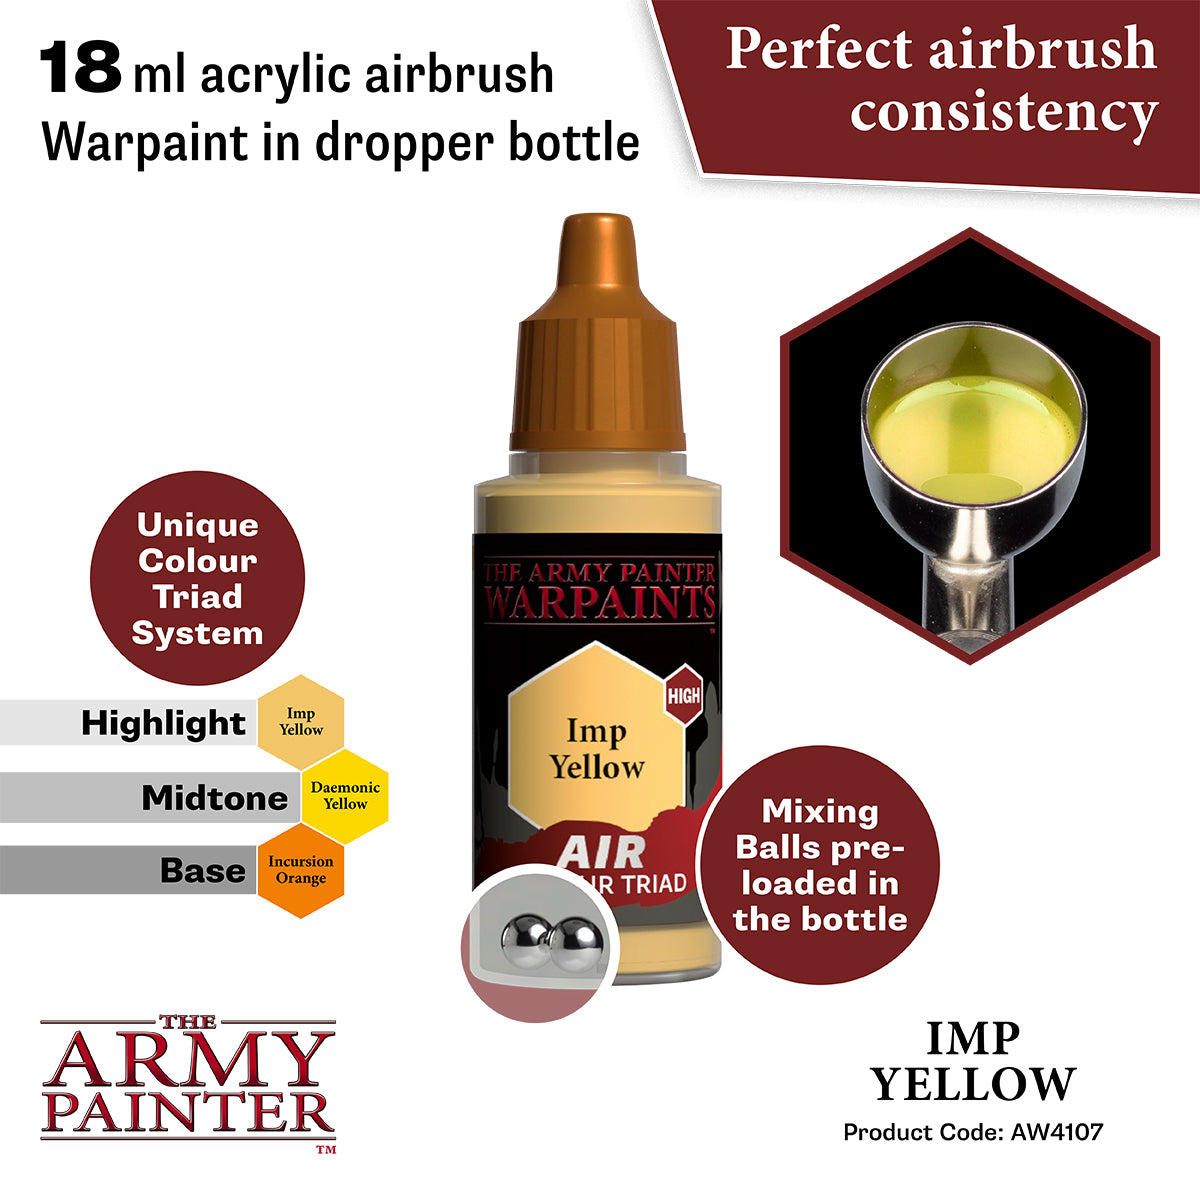 Warpaints Air: Imp Yellow